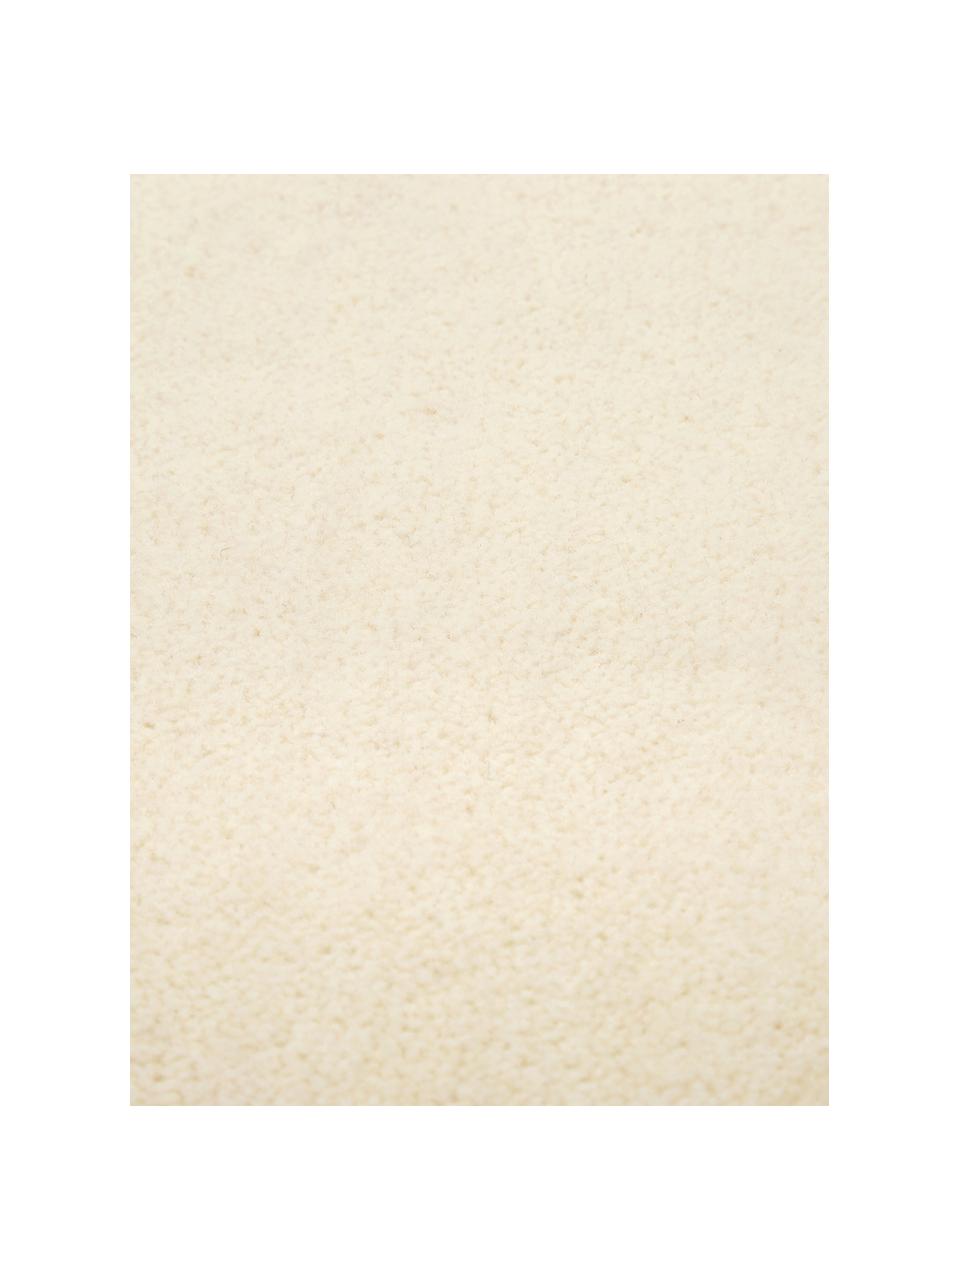 Rond wollen vloerkleed Ida in beige, Bovenzijde: 100% wol, Onderzijde: 60% jute, 40% polyester B, Beige, Ø 200 cm (maat L)